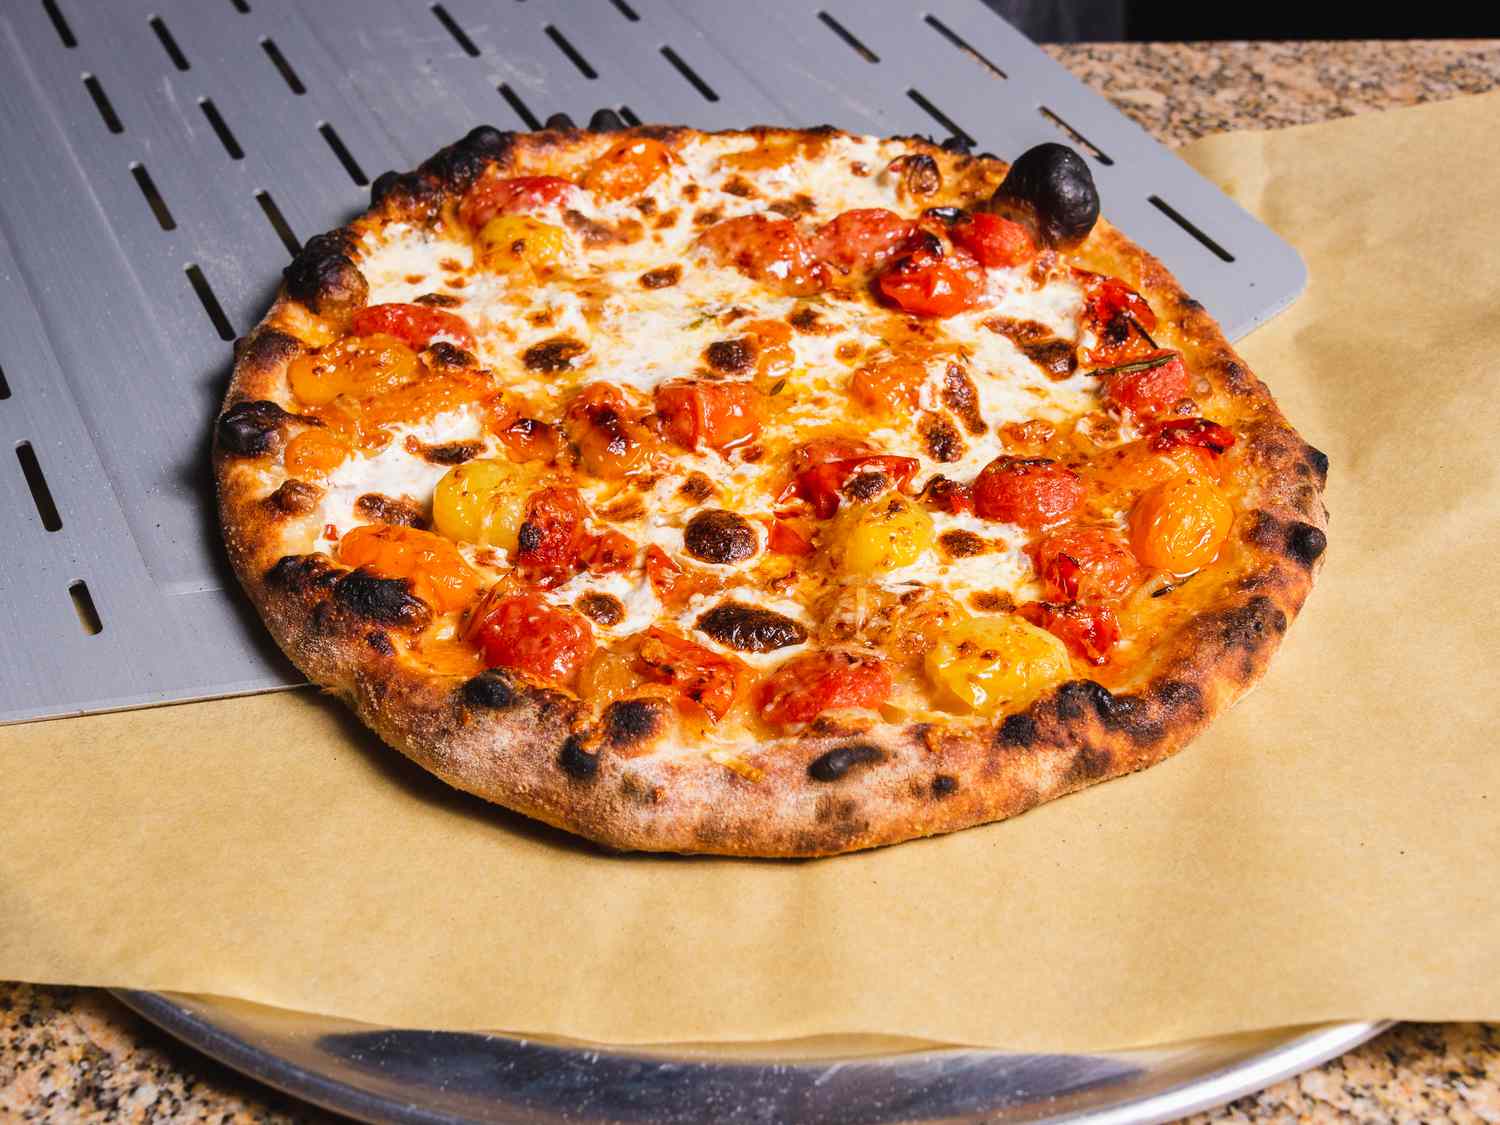 炸裂的樱桃番茄户外烤箱披萨正在从皮上滑到披萨盘上的羊皮纸上